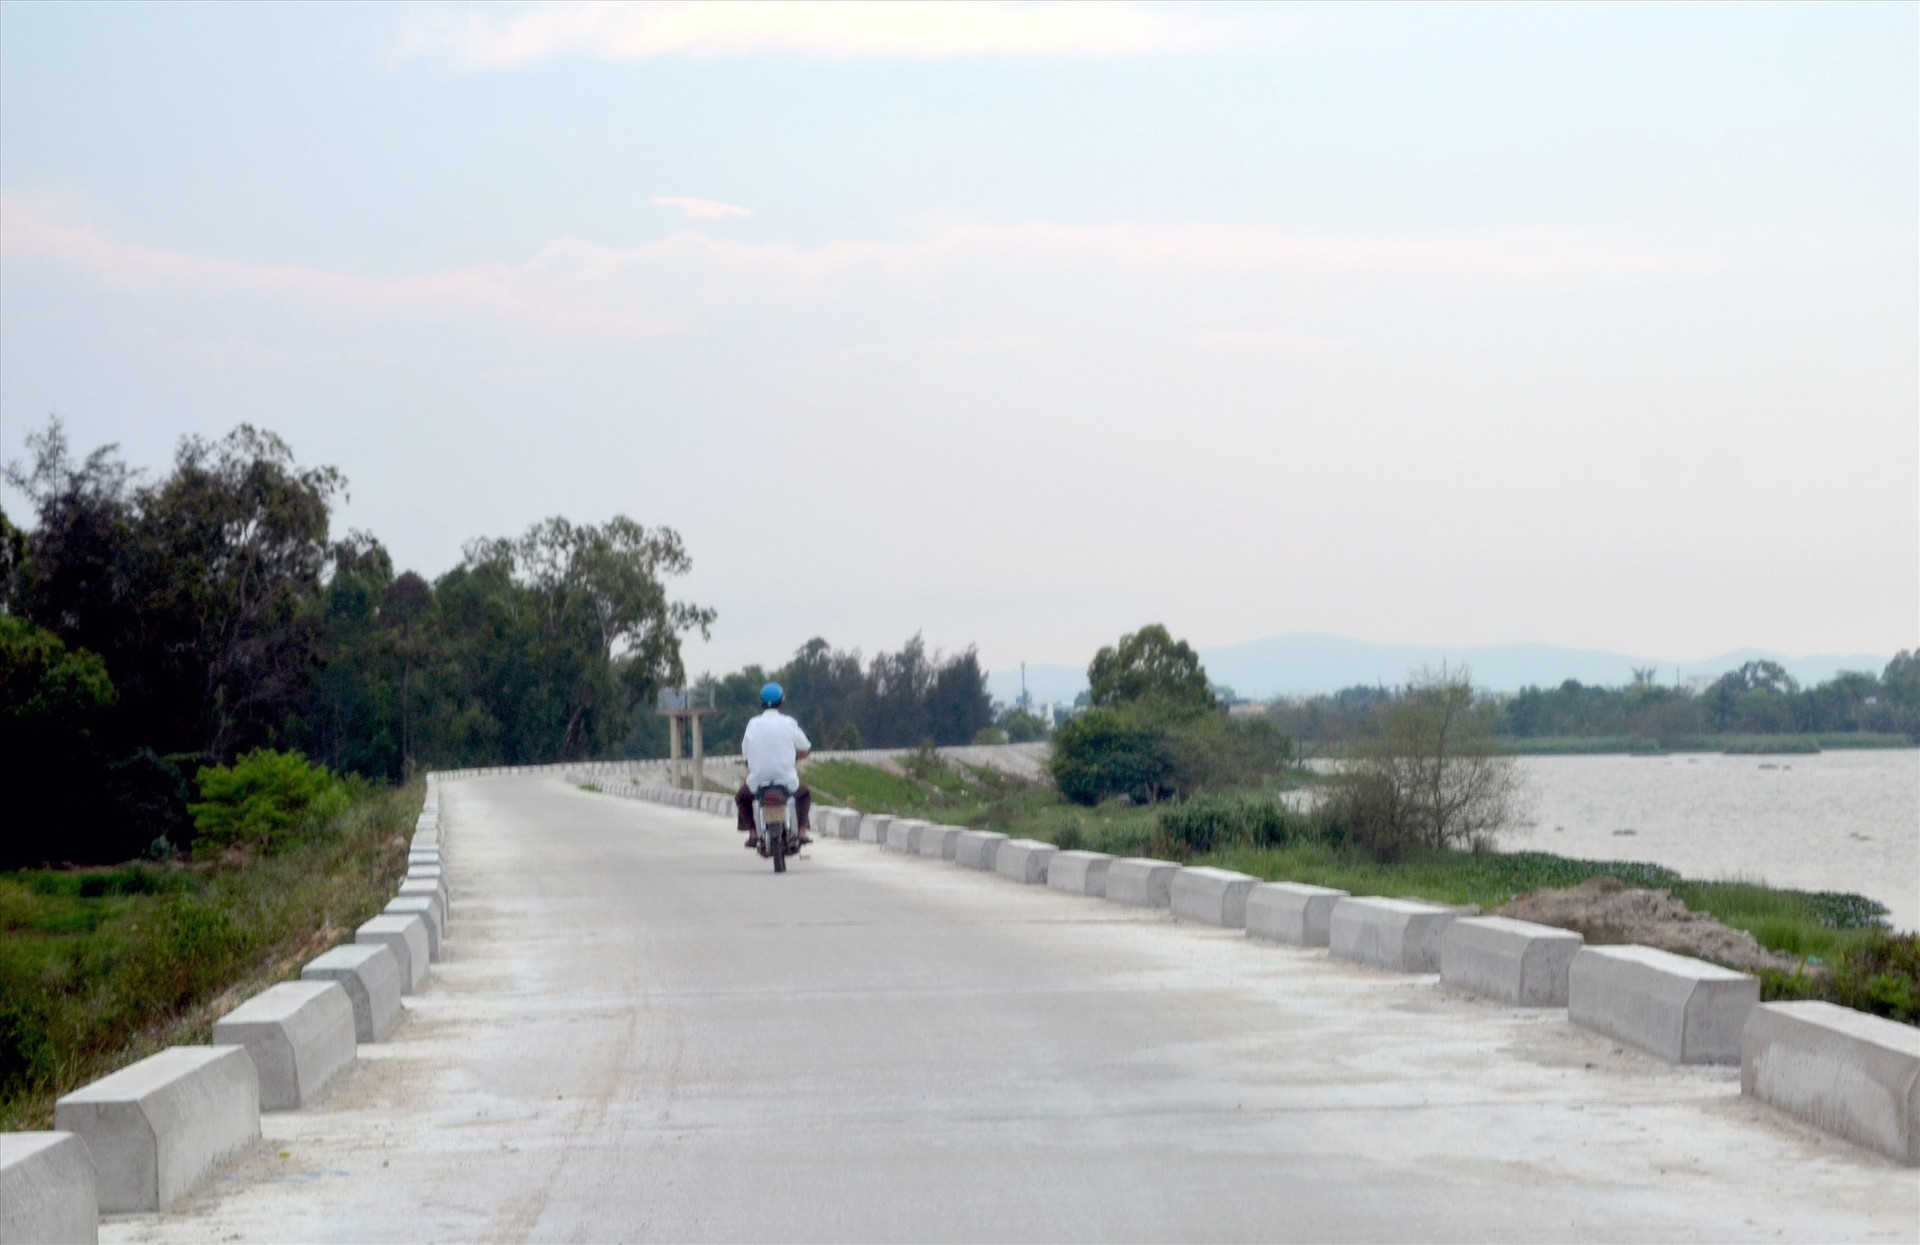 Đê sông Bàn Thạch đã thi công xong, nhưng đất sản xuất của nhiều hộ dân bị ảnh hưởng bởi dự án vẫn chưa được giải quyết BT-HT.Ảnh: H.P